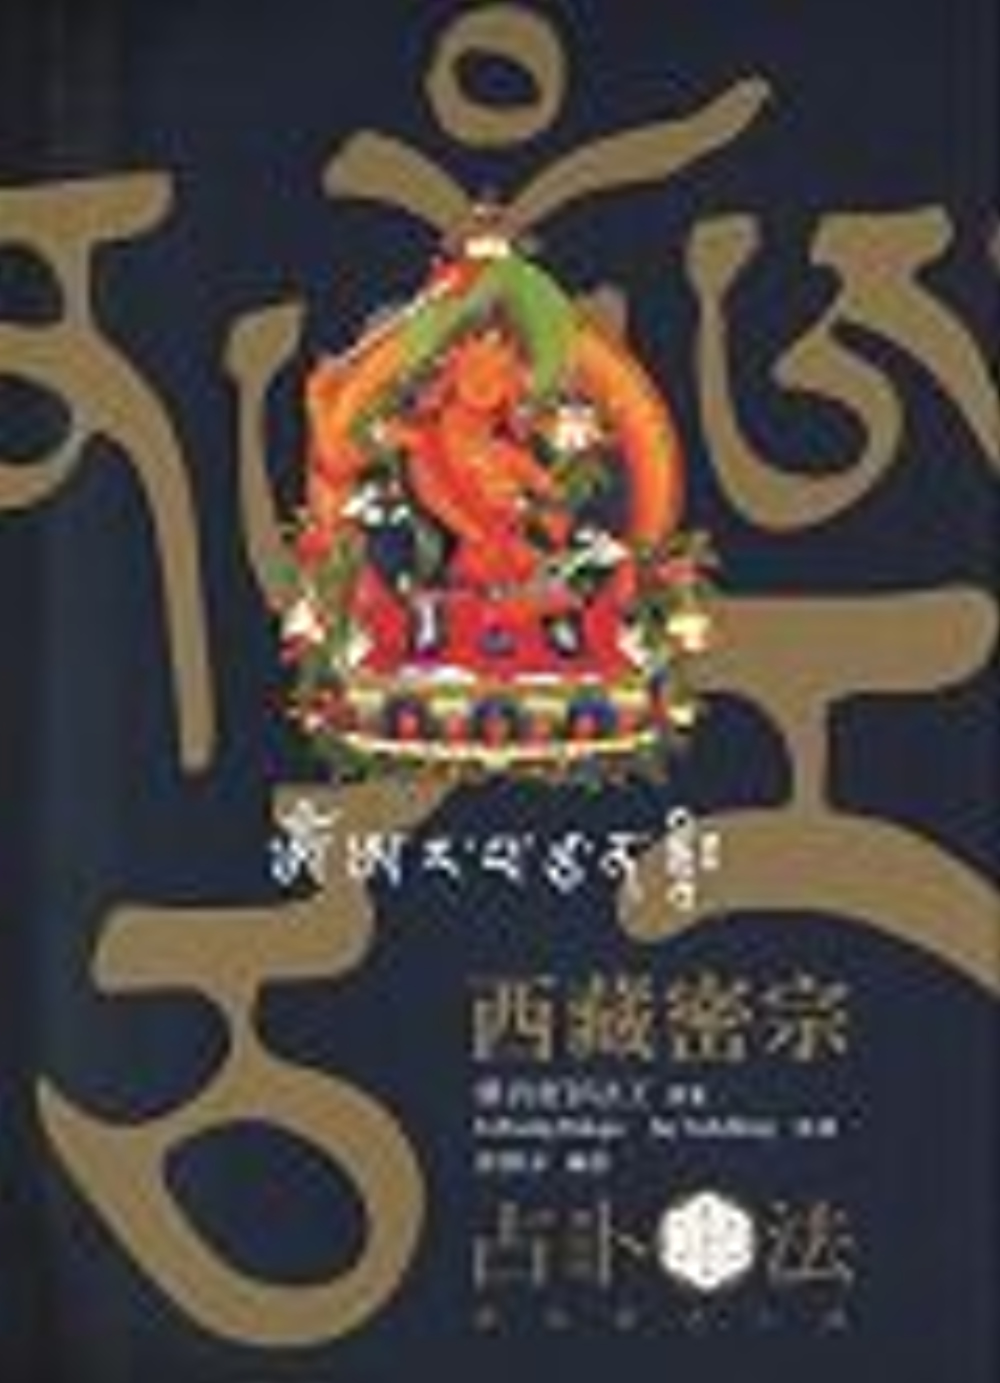 西藏密宗占卜法(修訂版)